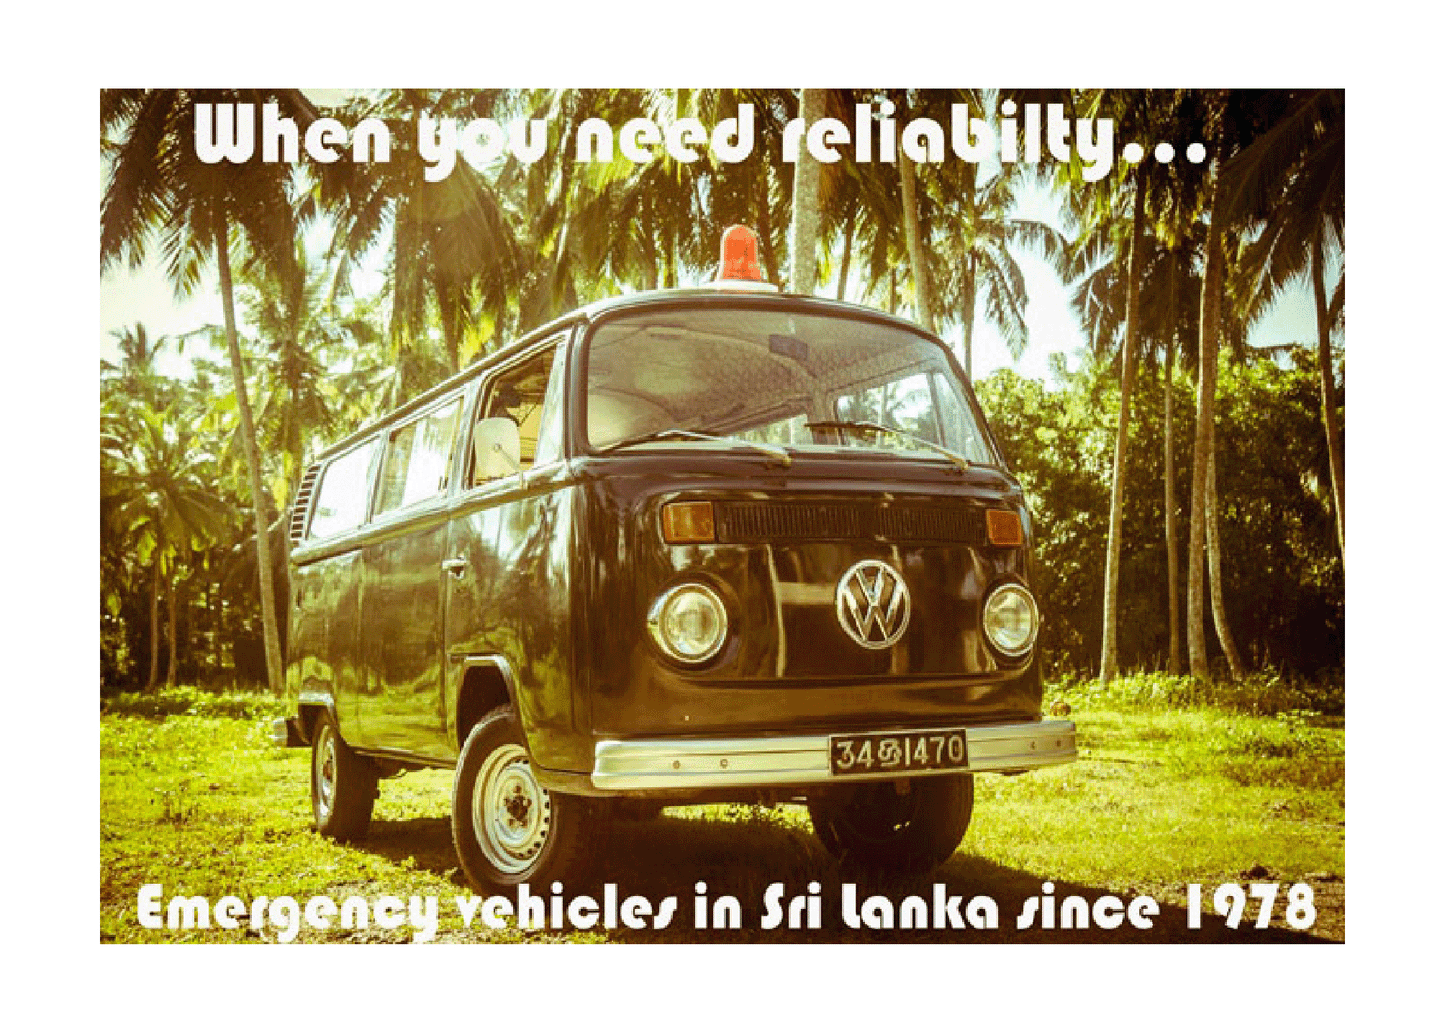 Volkswagen Ambulance (When You Need Raliyability), 1970s.